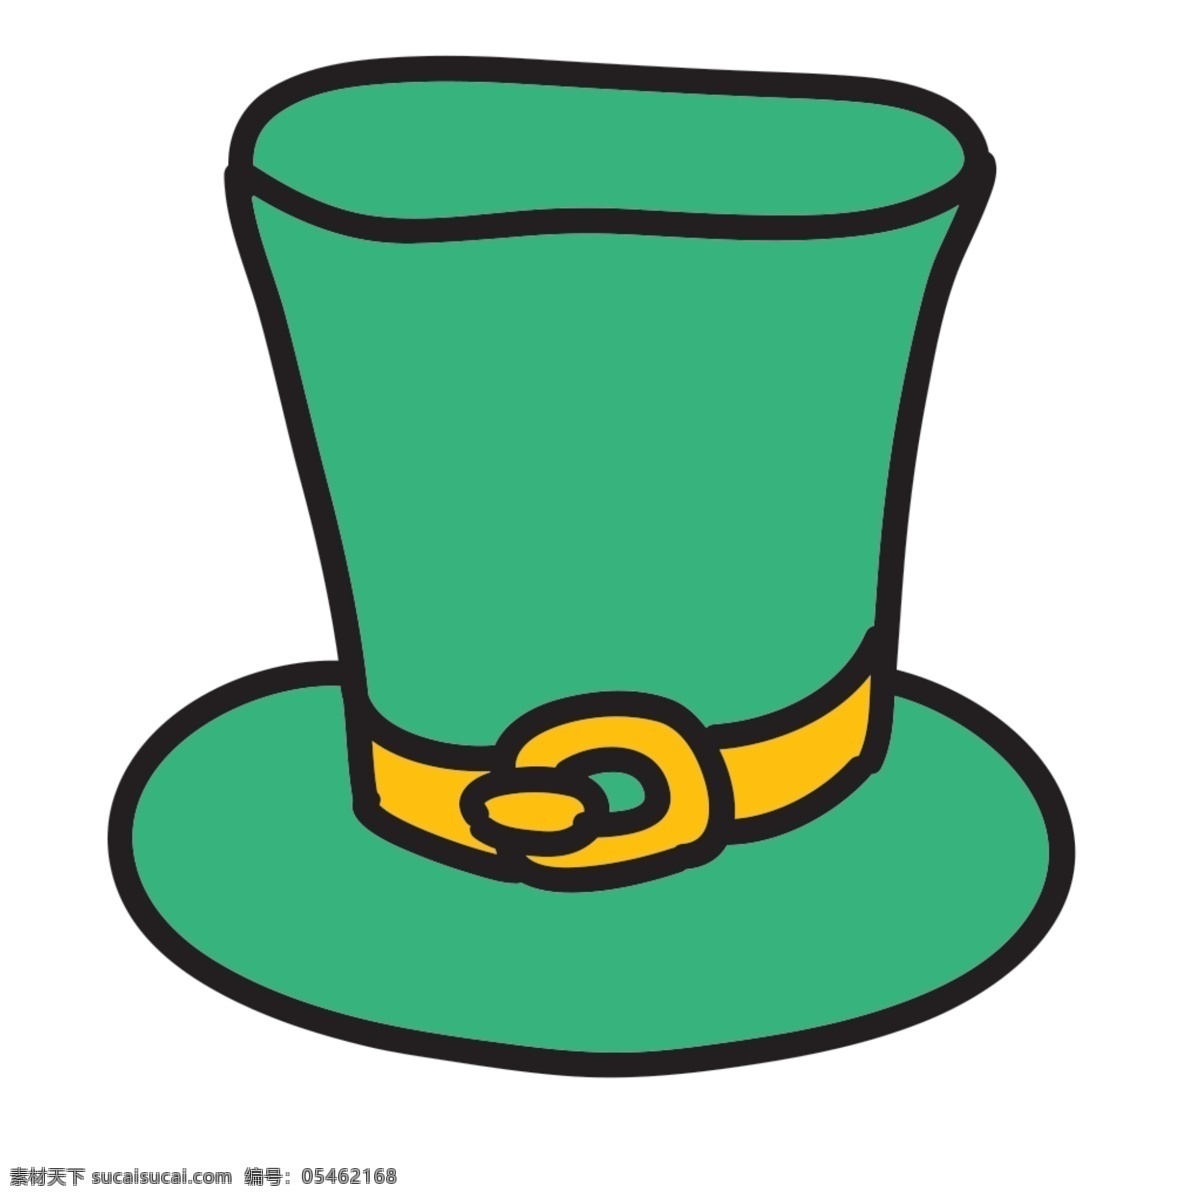 绿色 帽子 icon 图标 图标设计 icon设计 icon图标 网页图标 魔术帽图标 魔术 帽 帽子图标 帽子icon 魔术帽 帽子图标设计